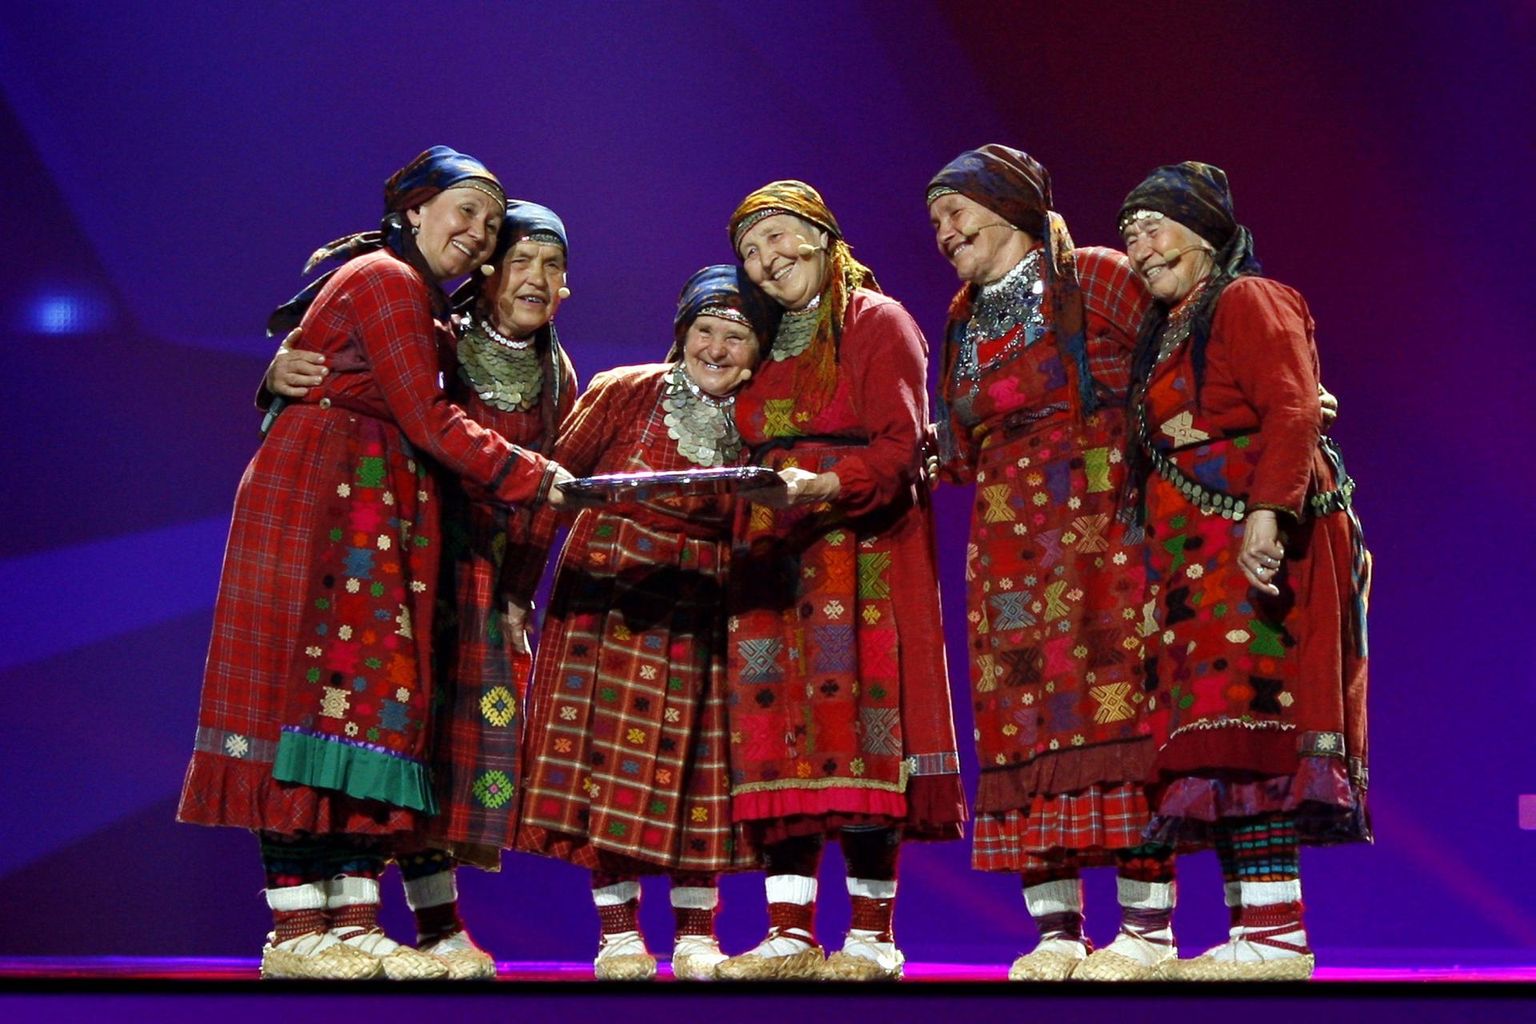 Osa võimude klantspildist, mis kujutab udmurtide elu ja tulevikku Venemaal helgetes toonides, on ka 2012. aastal Eurovisiooni lauluvõistlusel Venemaad esindanud Udmurtia vanamemmede folkansambel Buranovskie Babuški. 